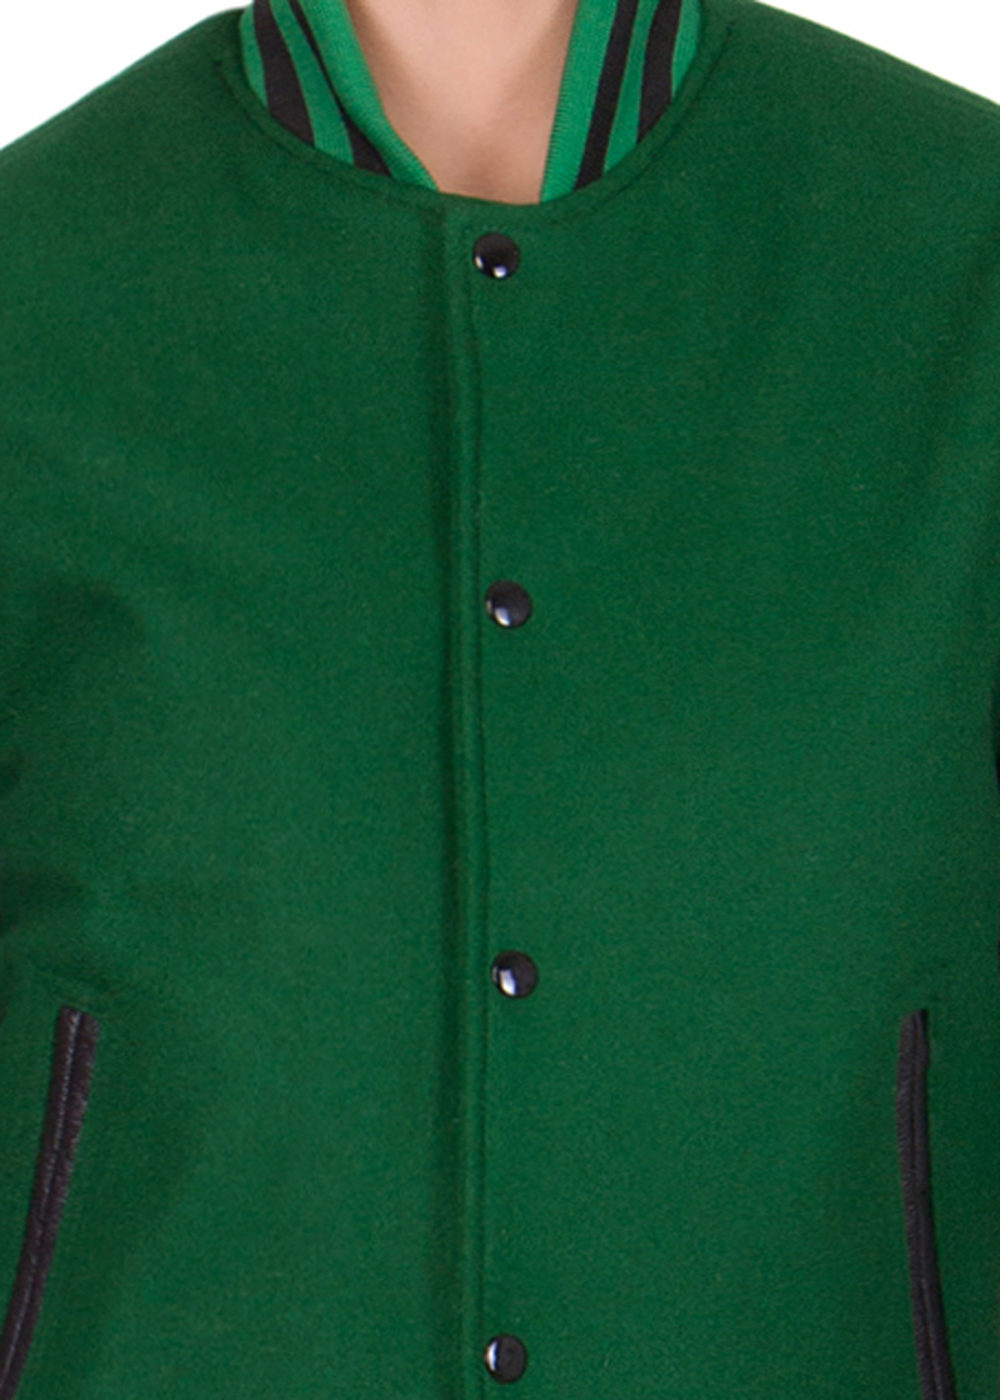 Kelly Green Wool Body Letterman Jacket